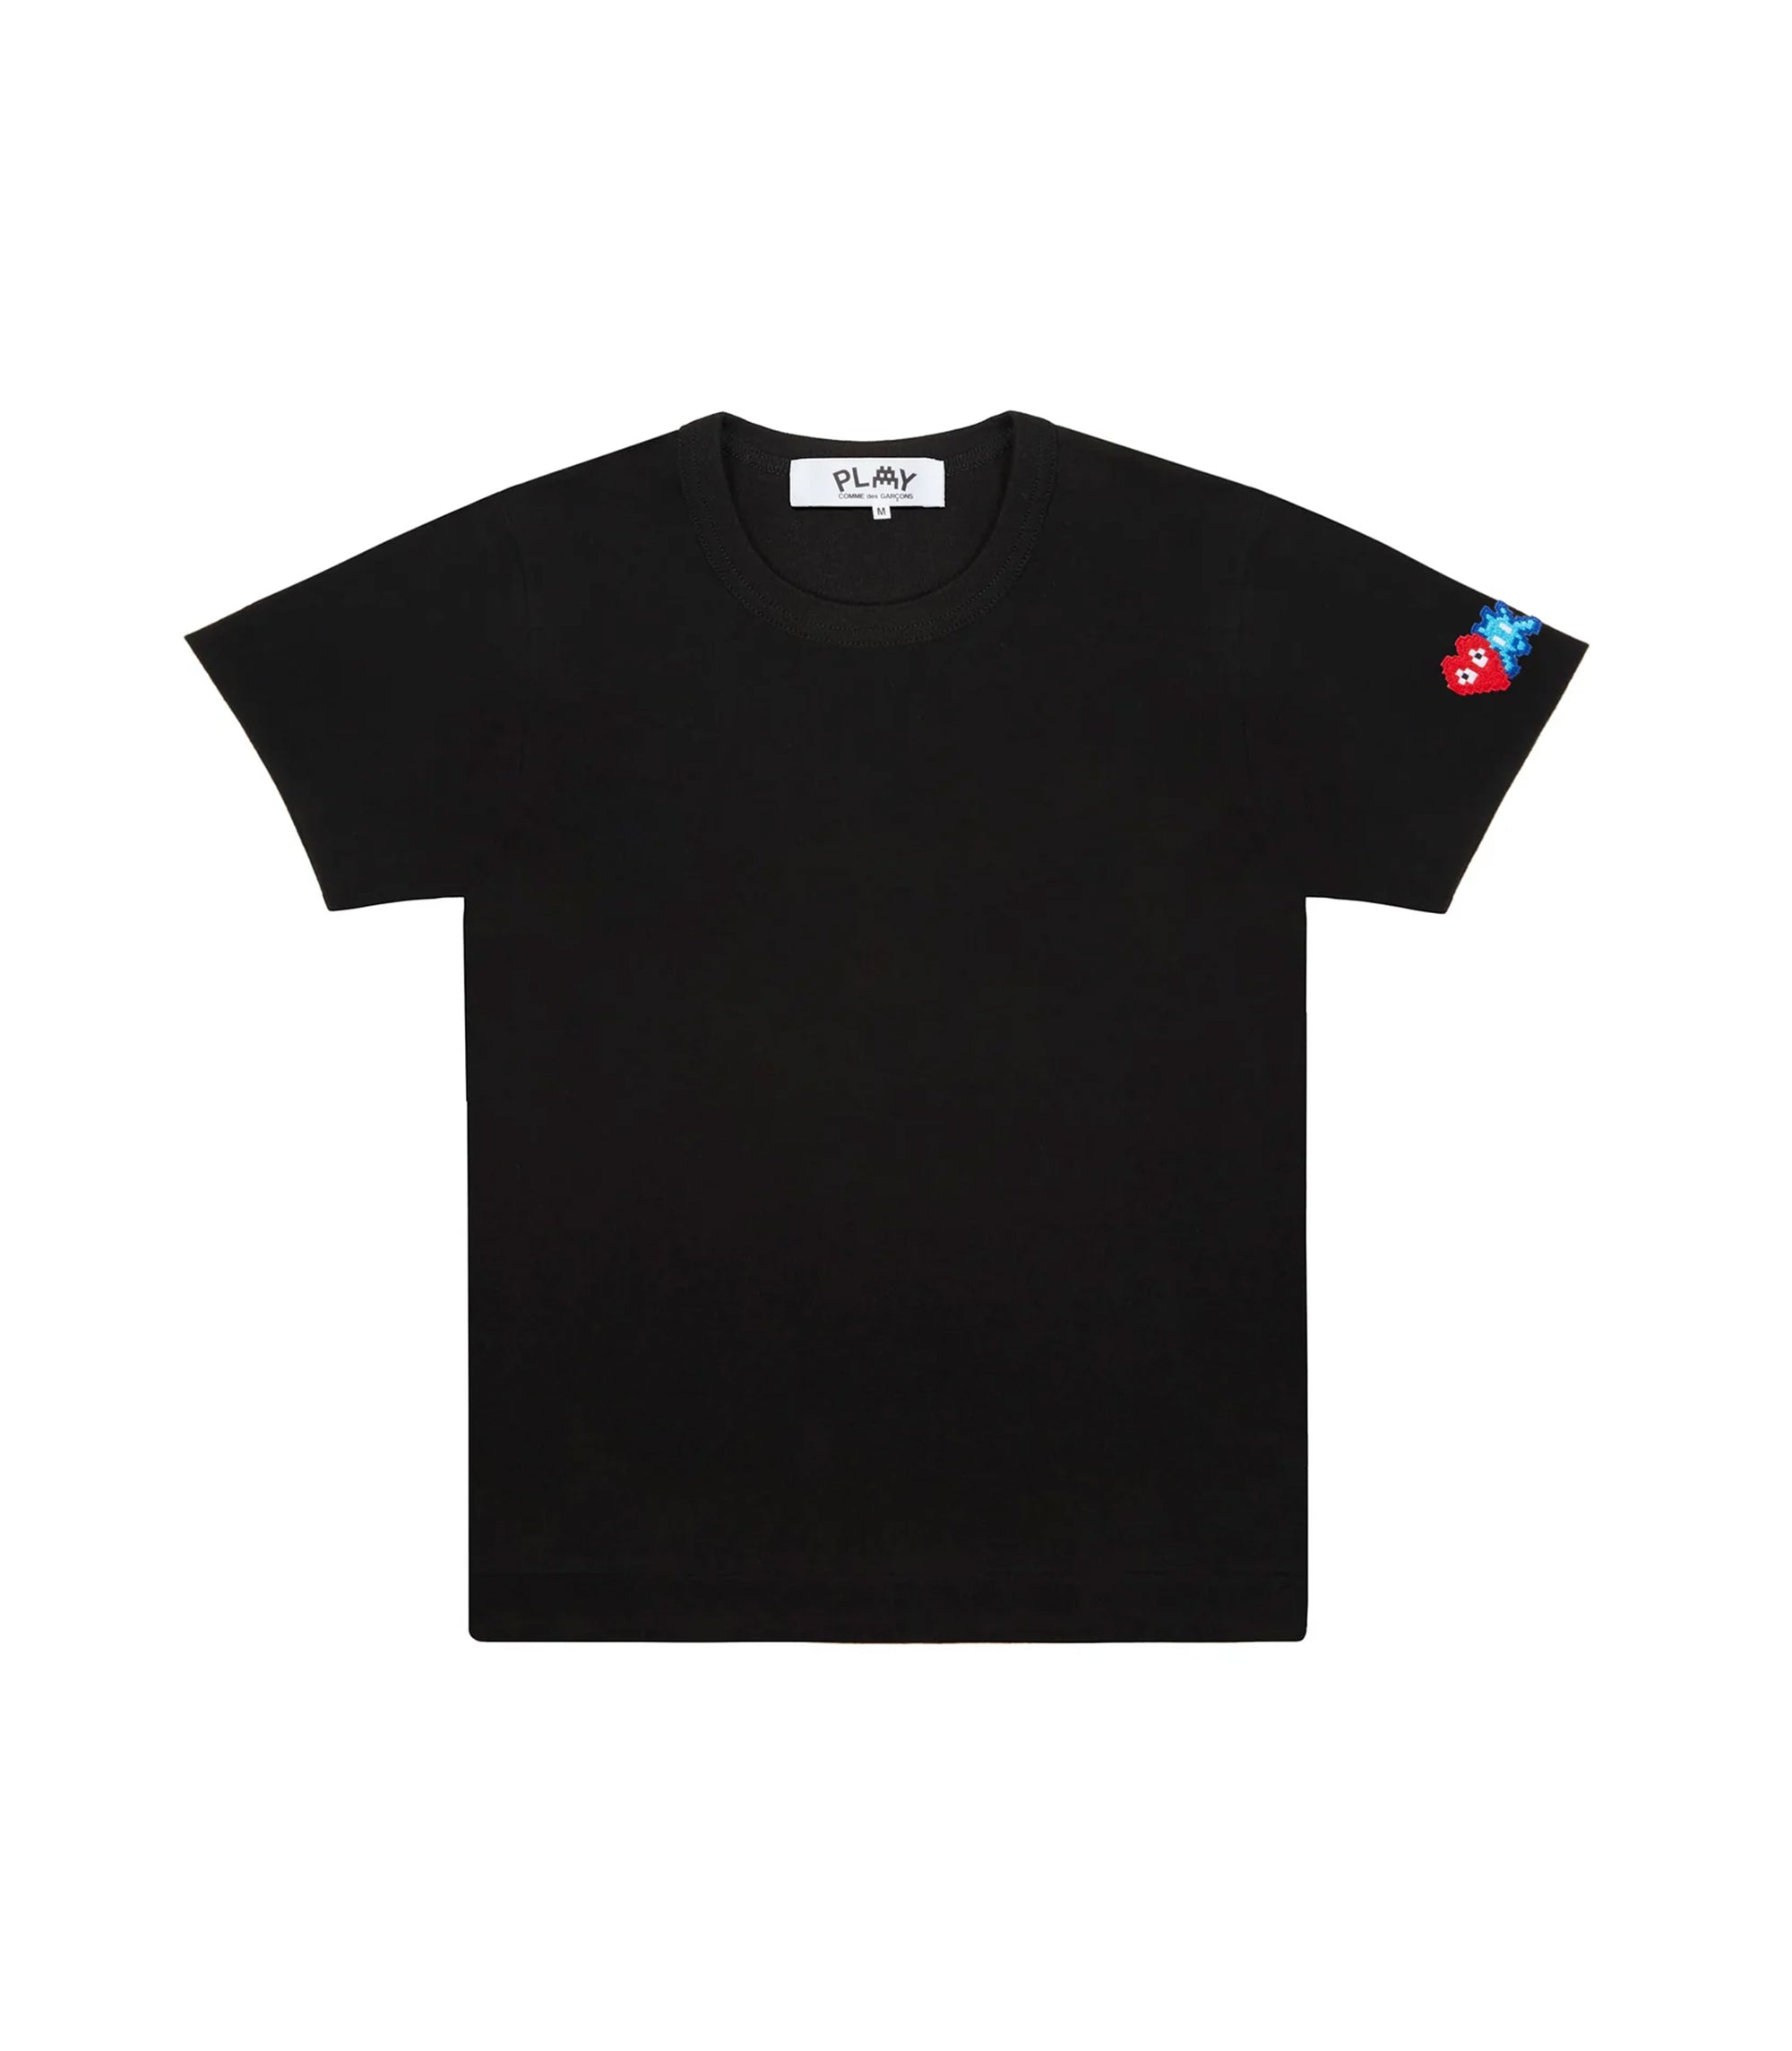 Invader T-shirt - Black